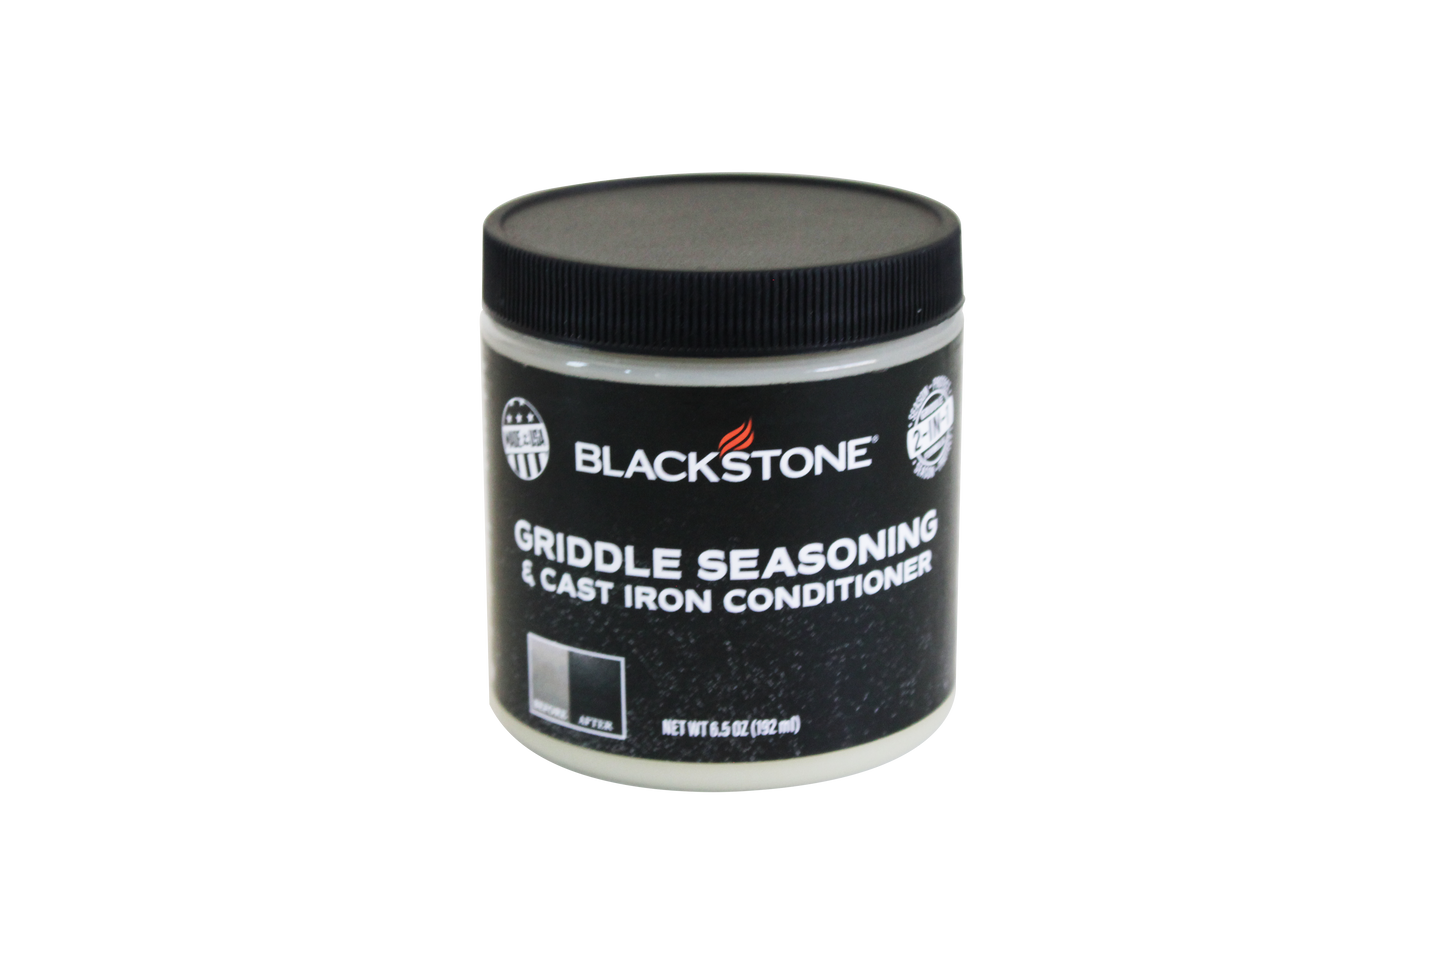 Blackstone Griddle Seasoning & Cast Iron Conditioner (Utah)